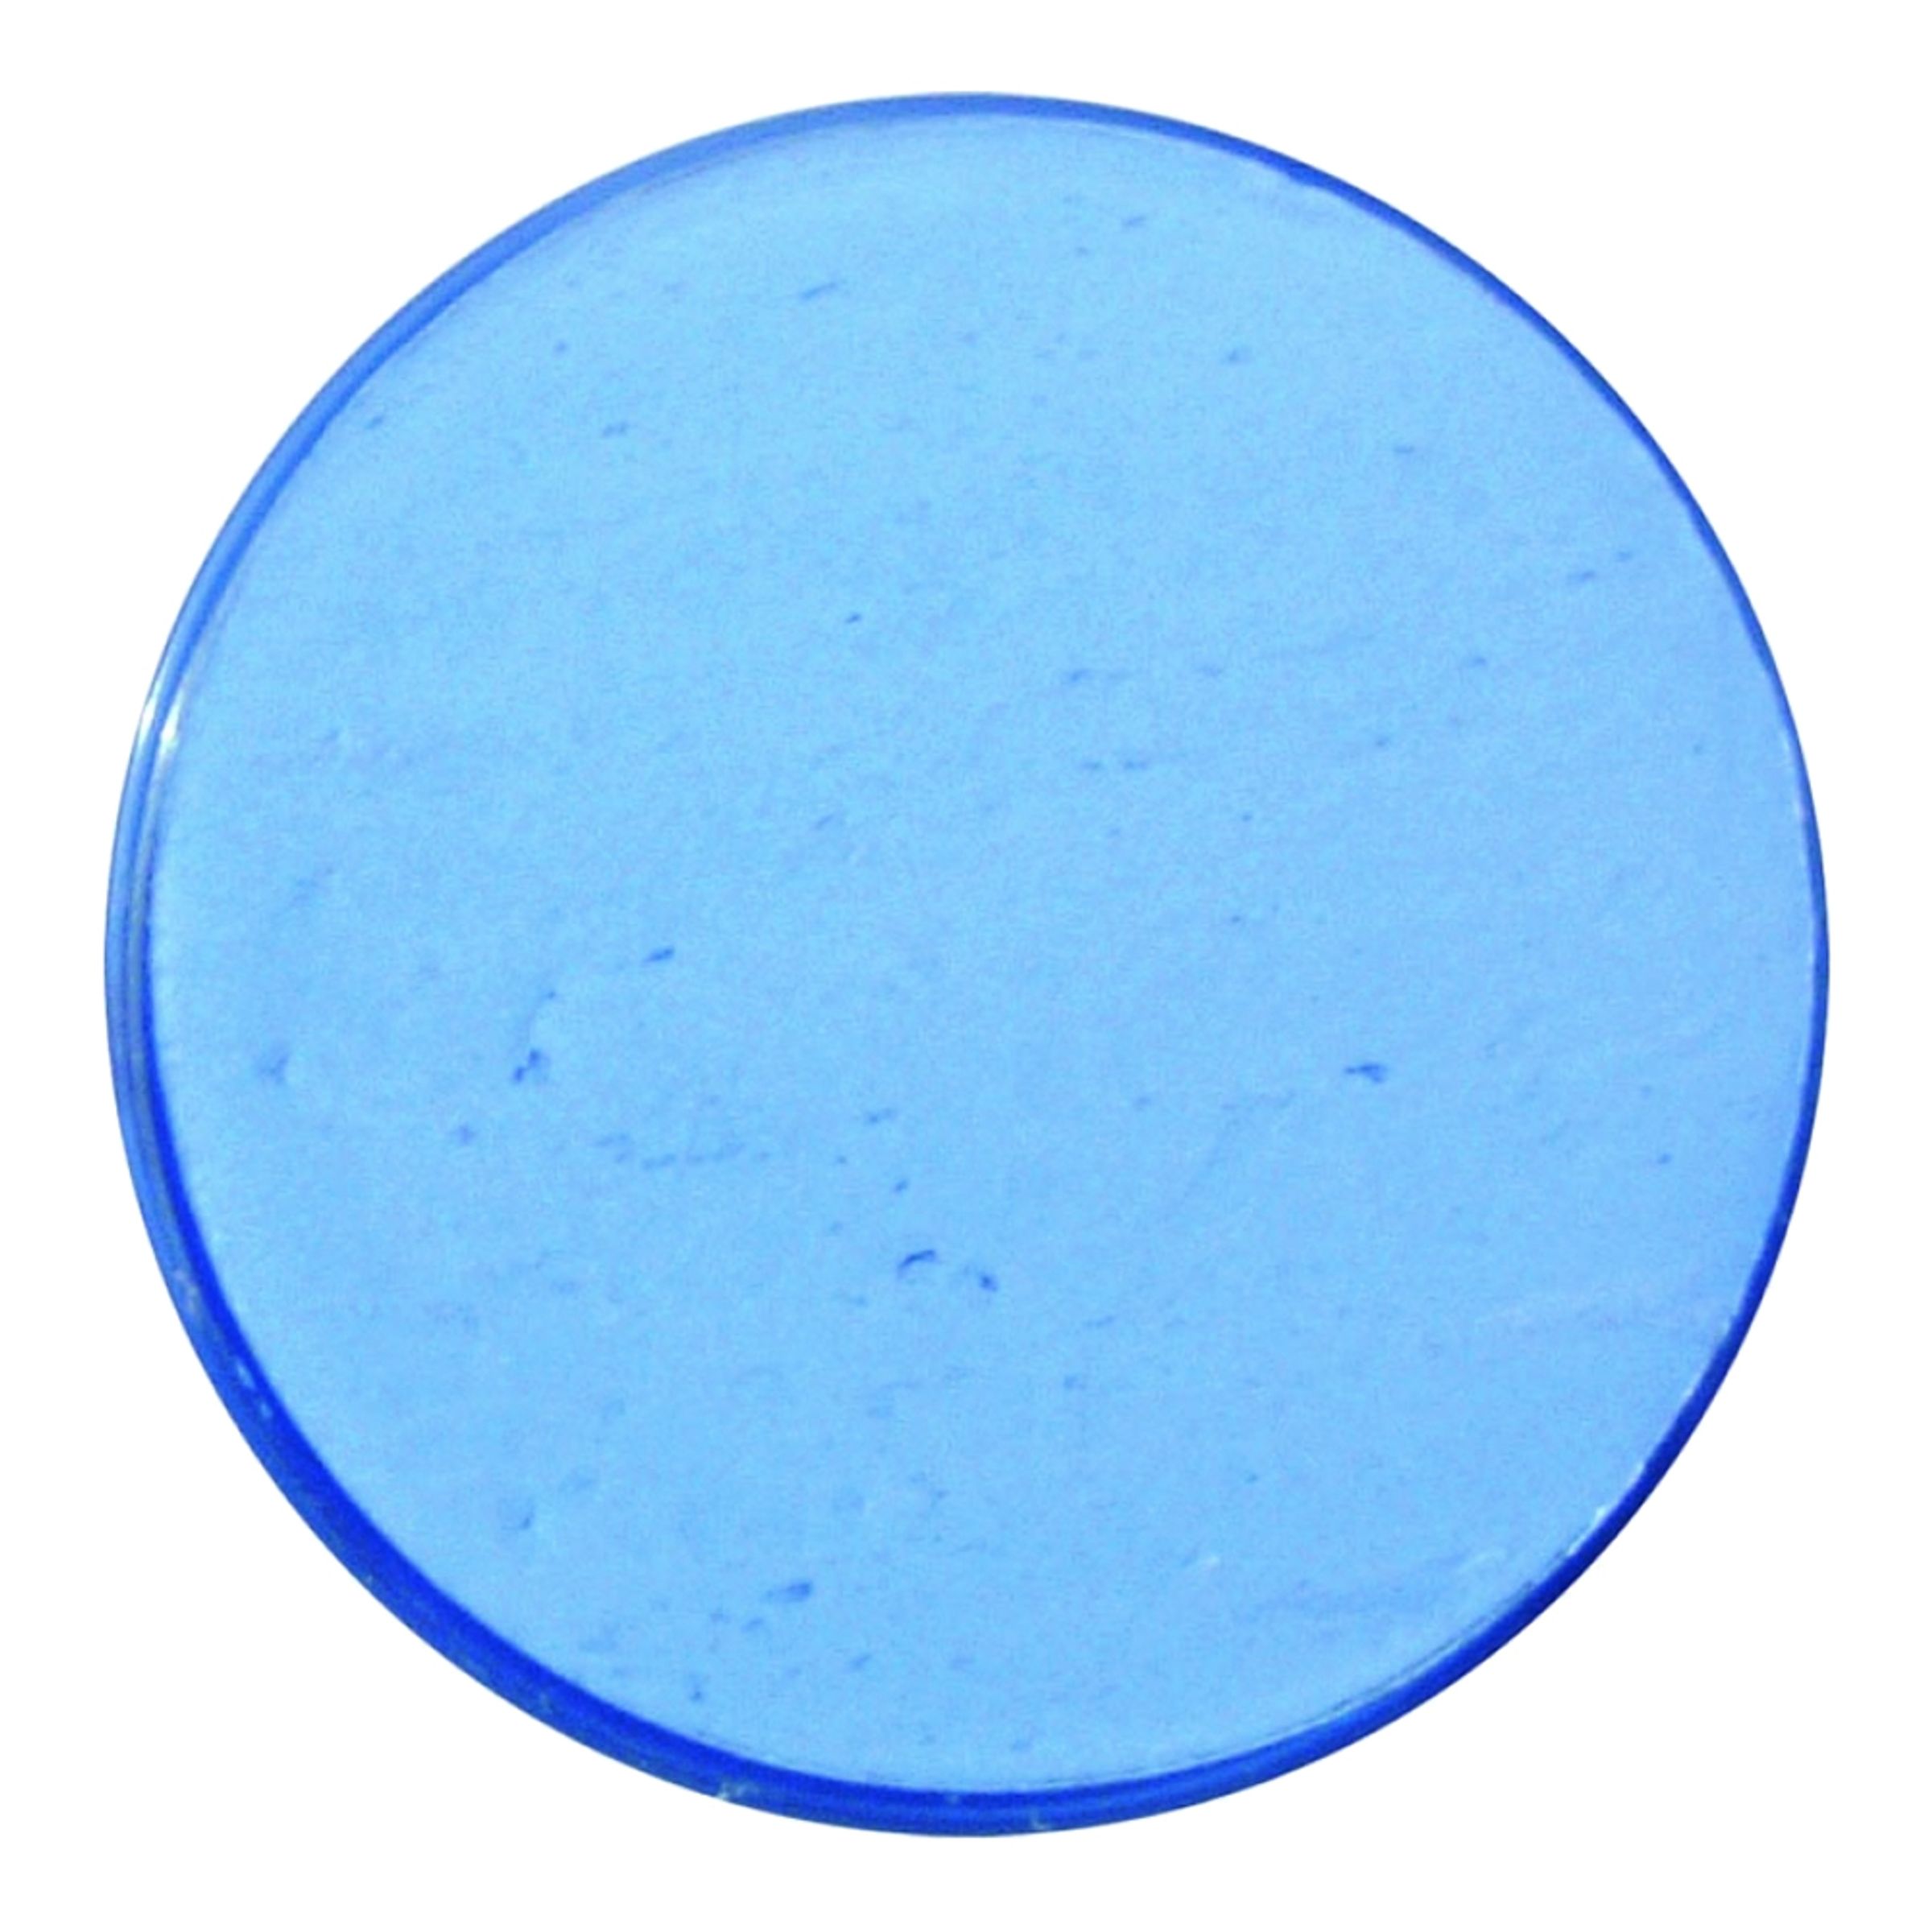 Snazaroo Ansiktsfärg - Ljusblå